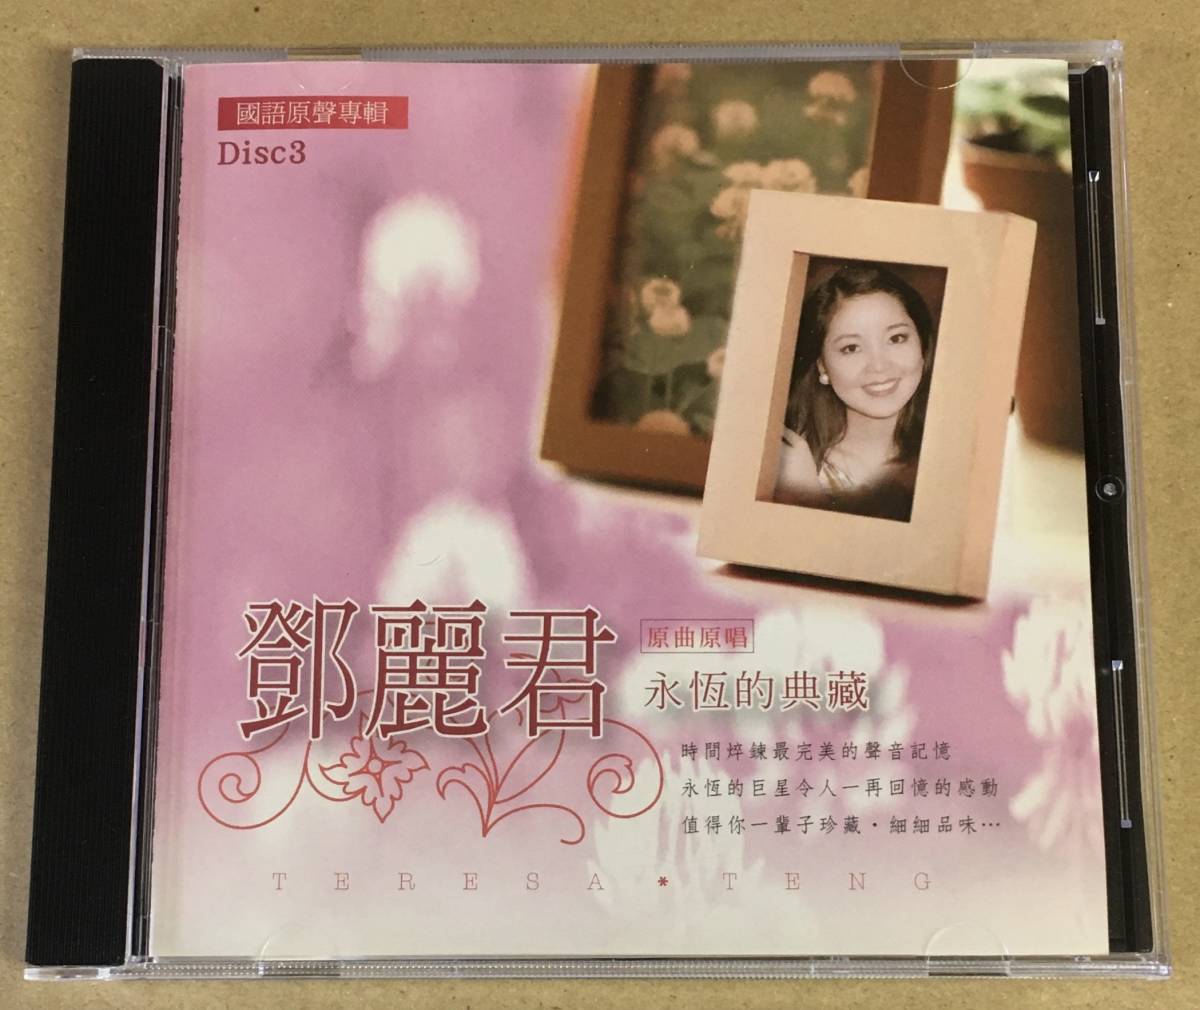 テレサ・テン 3CD BOX 台湾盤 中国語バージョン T3CD-051 …h-2301 鄧麗君 デン・リージュン TERESA TENG_画像7